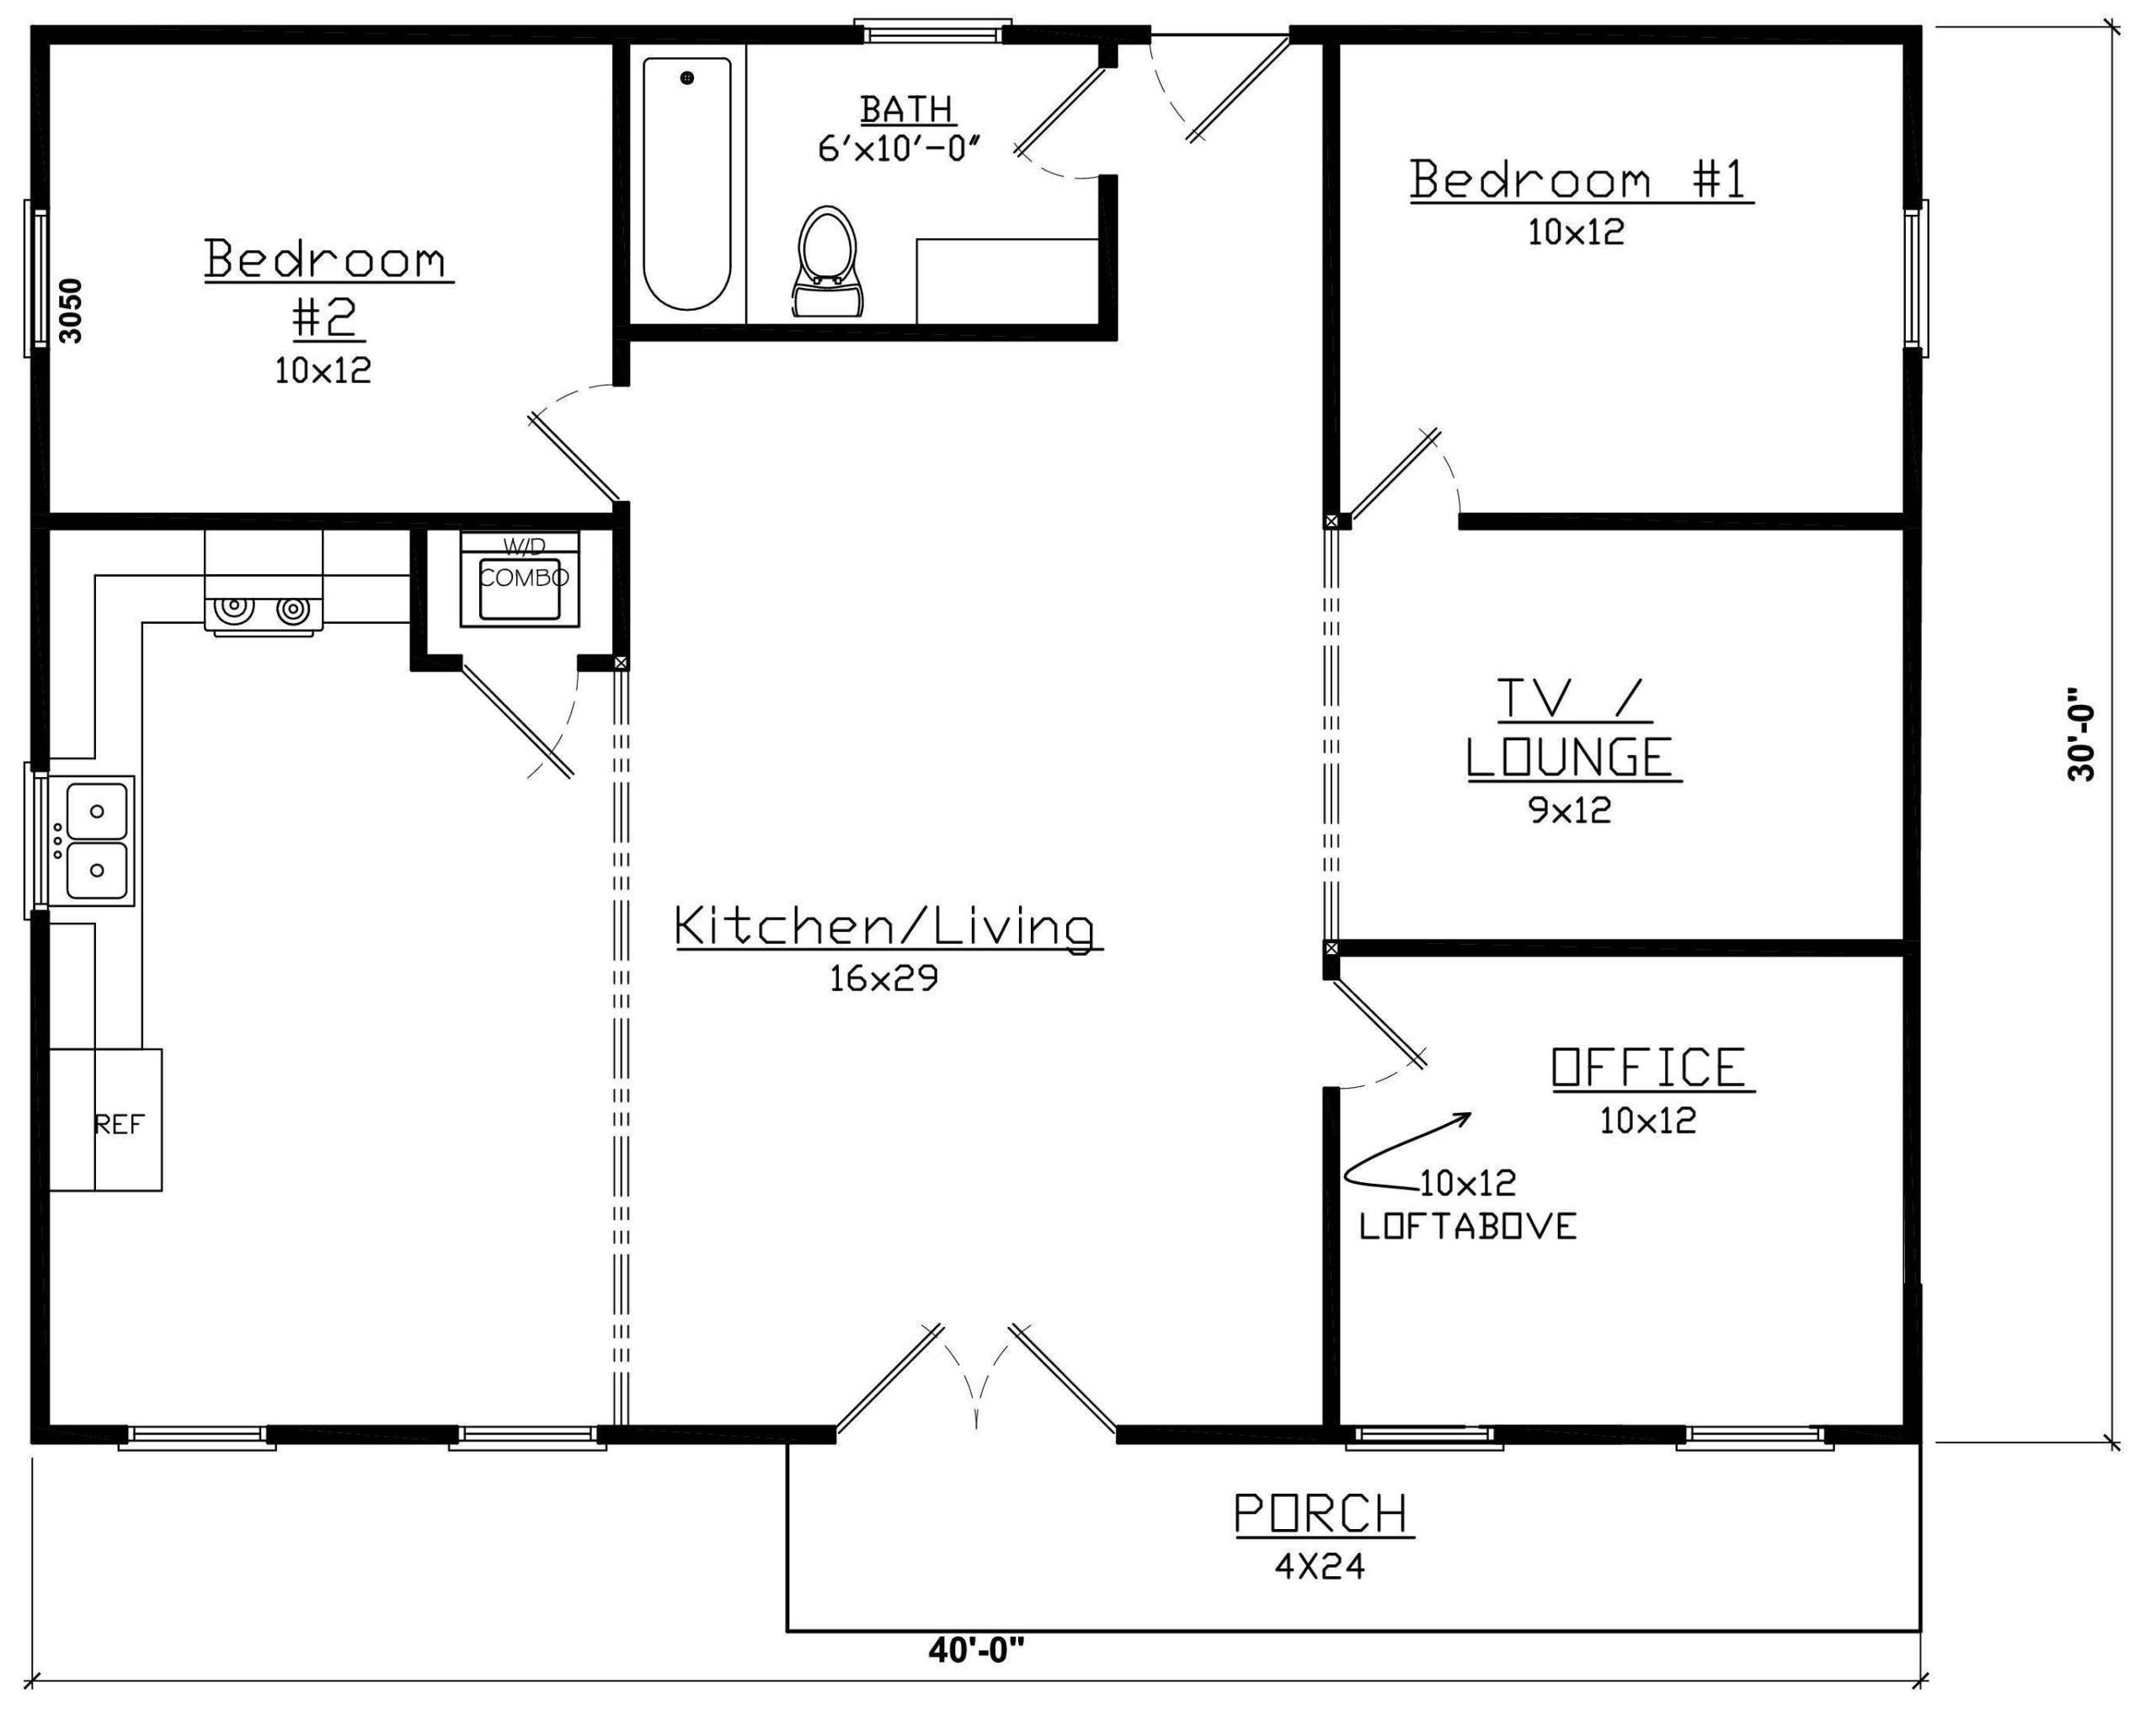 Floor plan for an MSH 1,200 sq. ft. Modern home kit